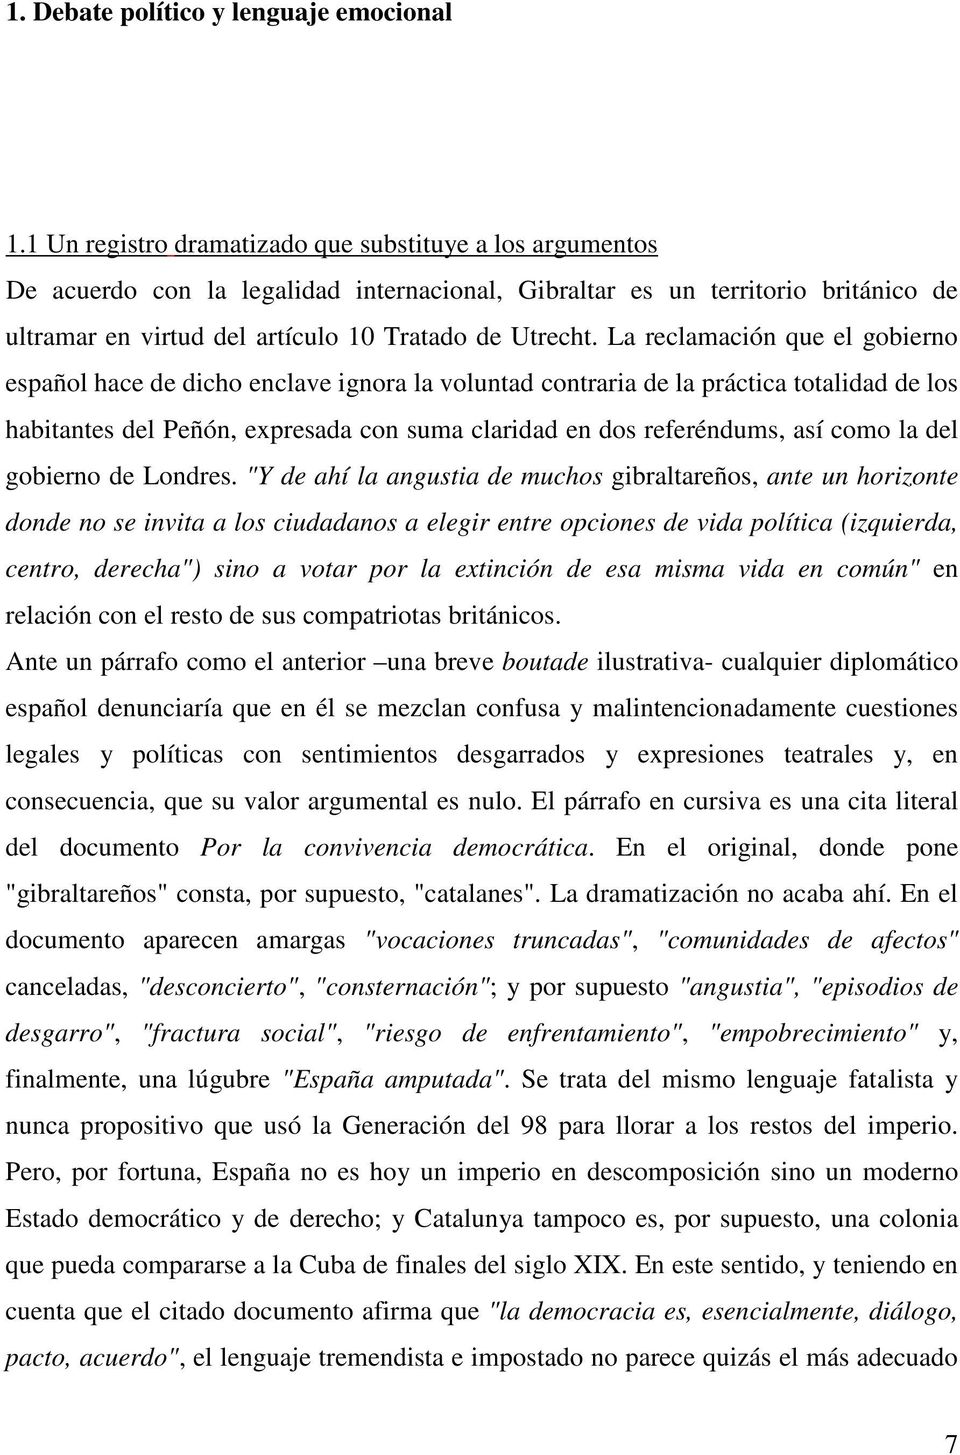 La reclamación que el gobierno español hace de dicho enclave ignora la voluntad contraria de la práctica totalidad de los habitantes del Peñón, expresada con suma claridad en dos referéndums, así